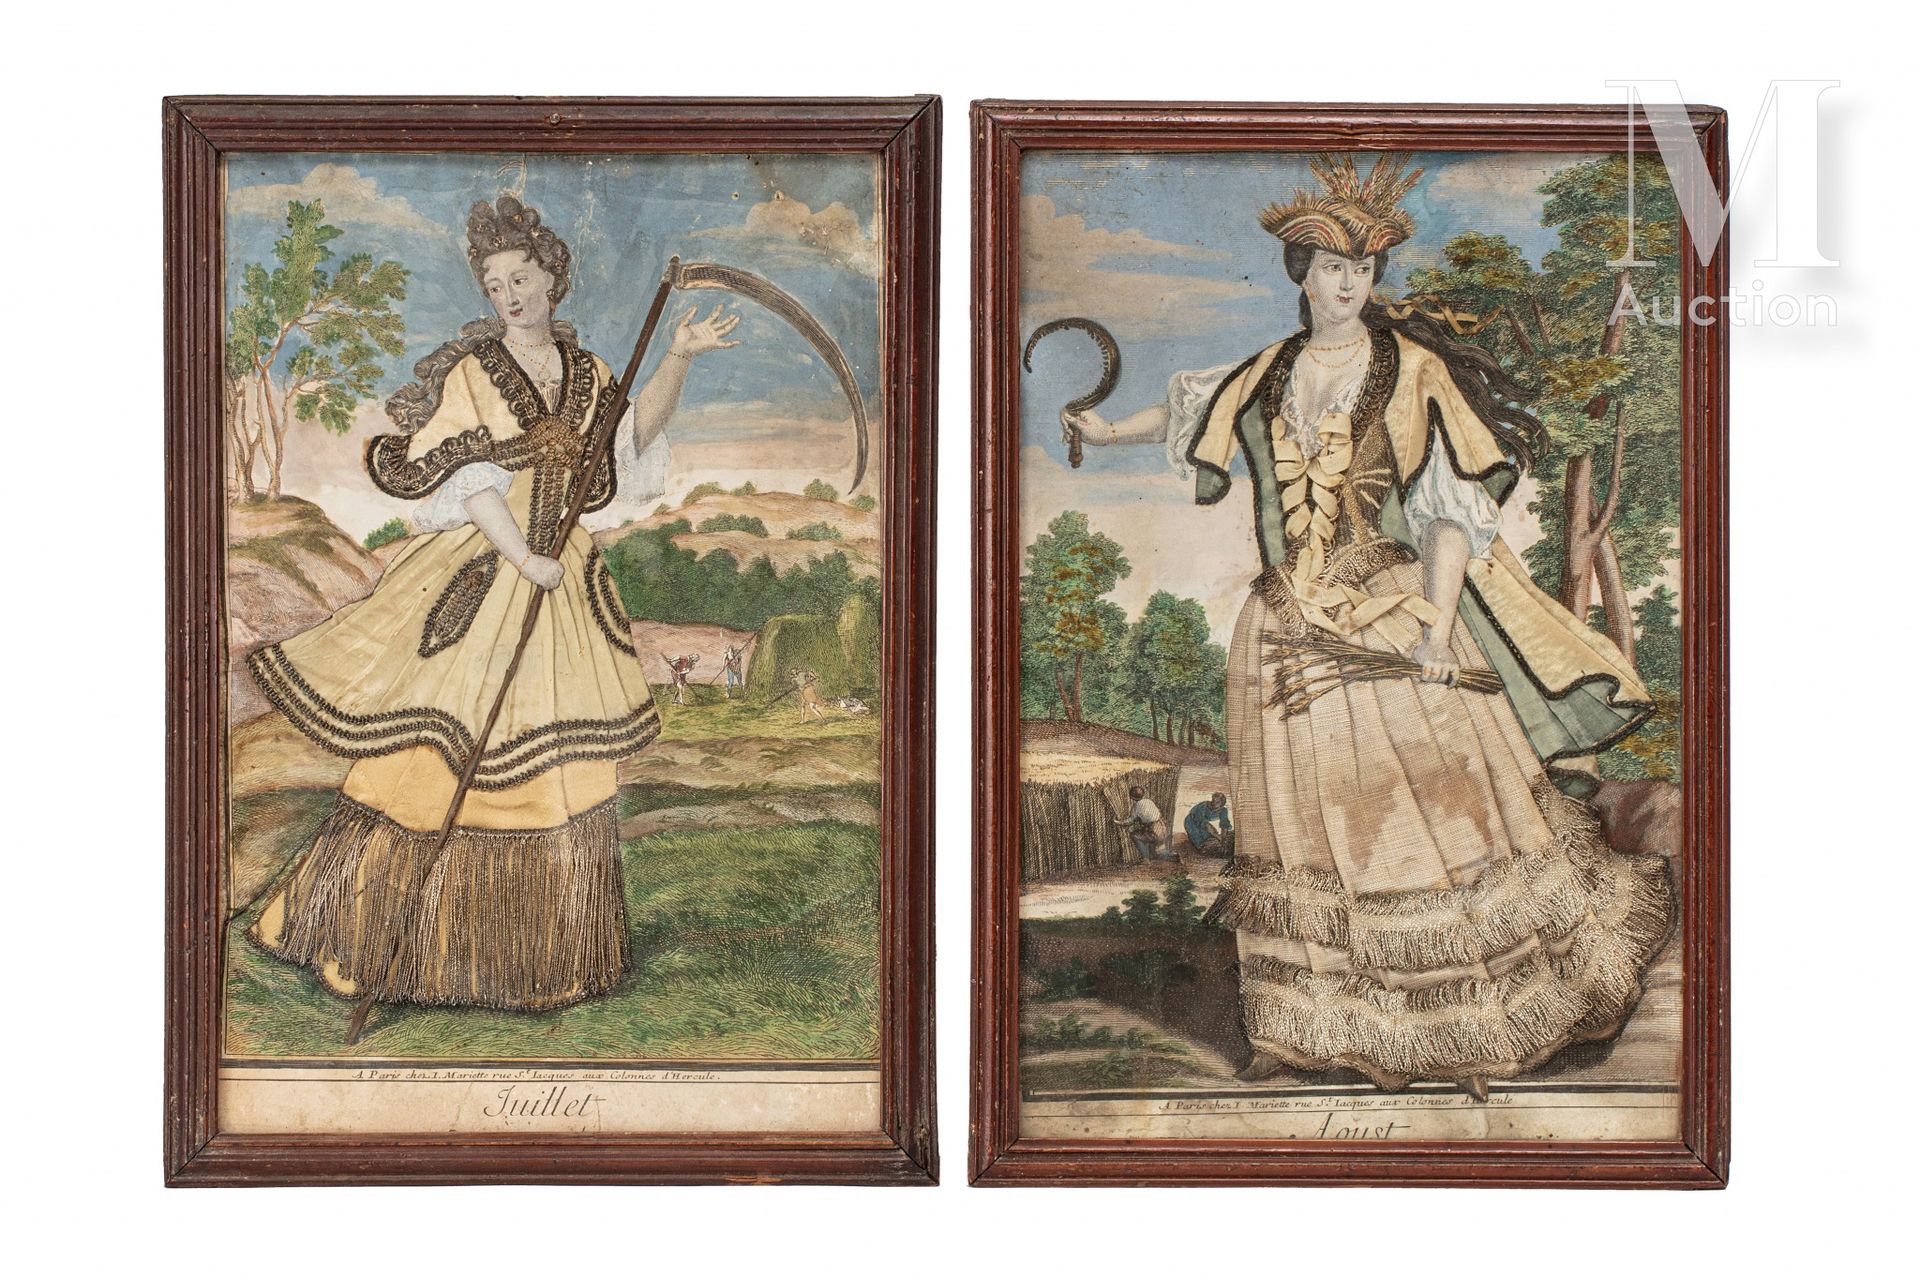 Rare paire de gravures rehaussées 并用丝绸和银线刺绣，以七月和八月的寓言人物为主题，名为 "Juillet "和 "Aoust&hellip;